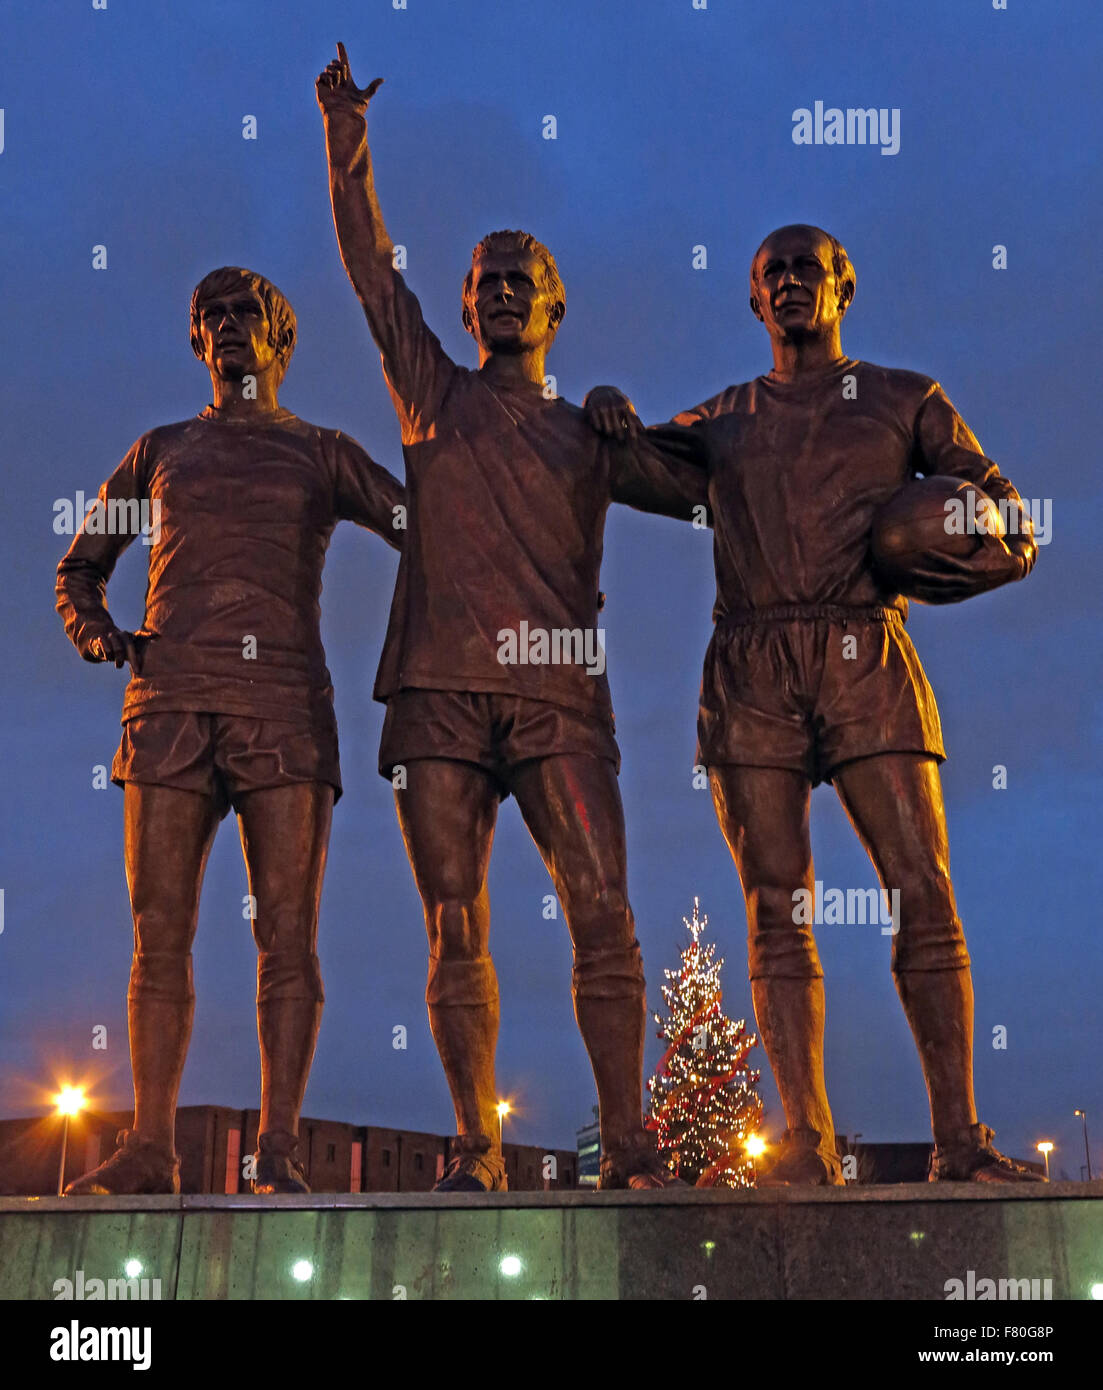 Vereinigte Trinity/Heilige Dreifaltigkeit Statue von Manchester United Trio von Bobby Charlton, George Best und Denis Law in der Abenddämmerung Stockfoto